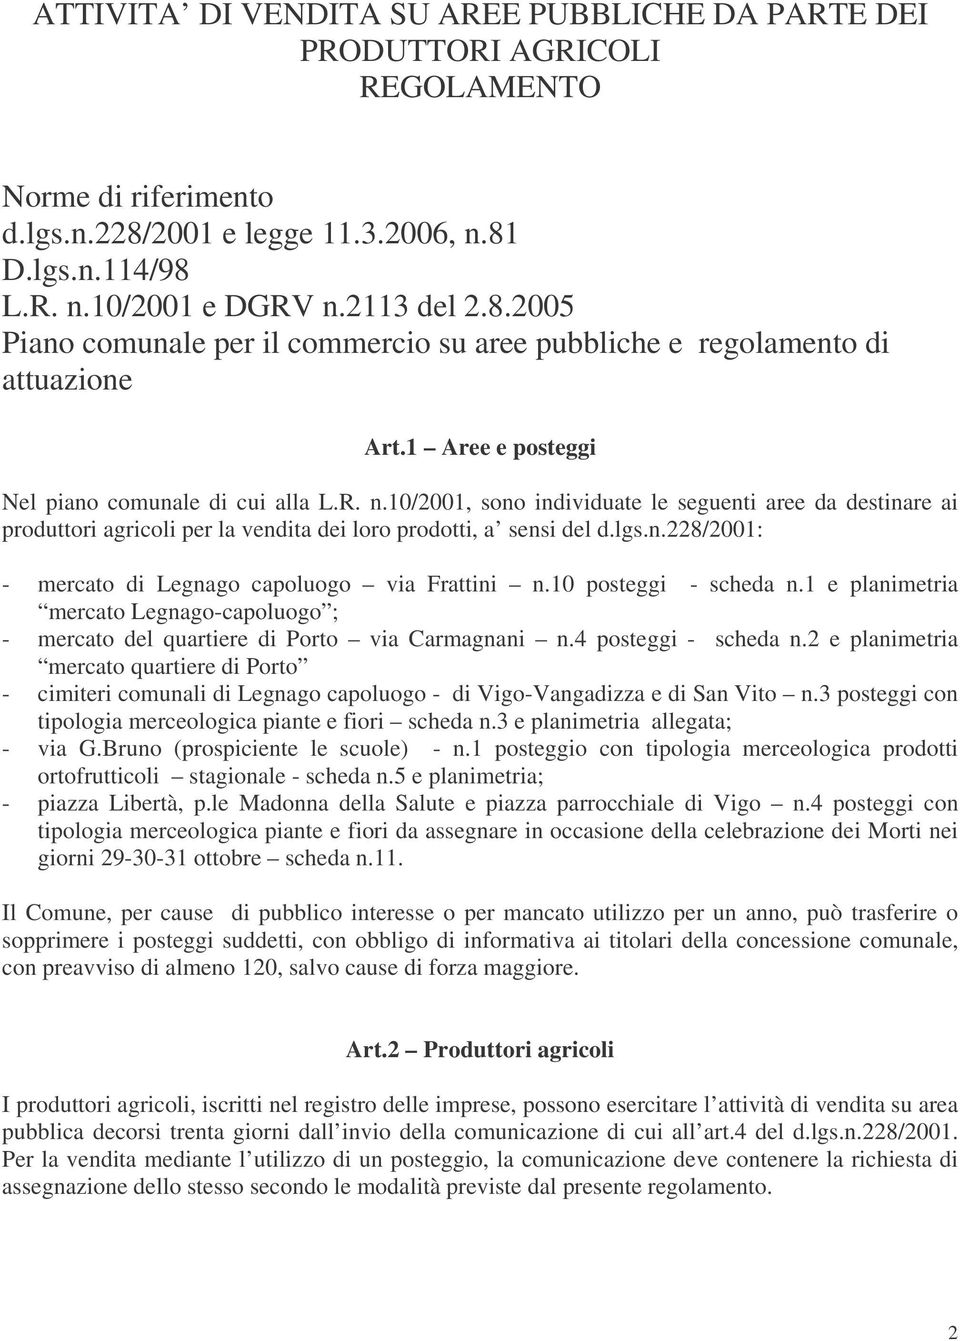 1 Aree e posteggi Nel piano comunale di cui alla L.R. n.10/2001, sono individuate le seguenti aree da destinare ai produttori agricoli per la vendita dei loro prodotti, a sensi del d.lgs.n.228/2001: - mercato di Legnago capoluogo via Frattini n.